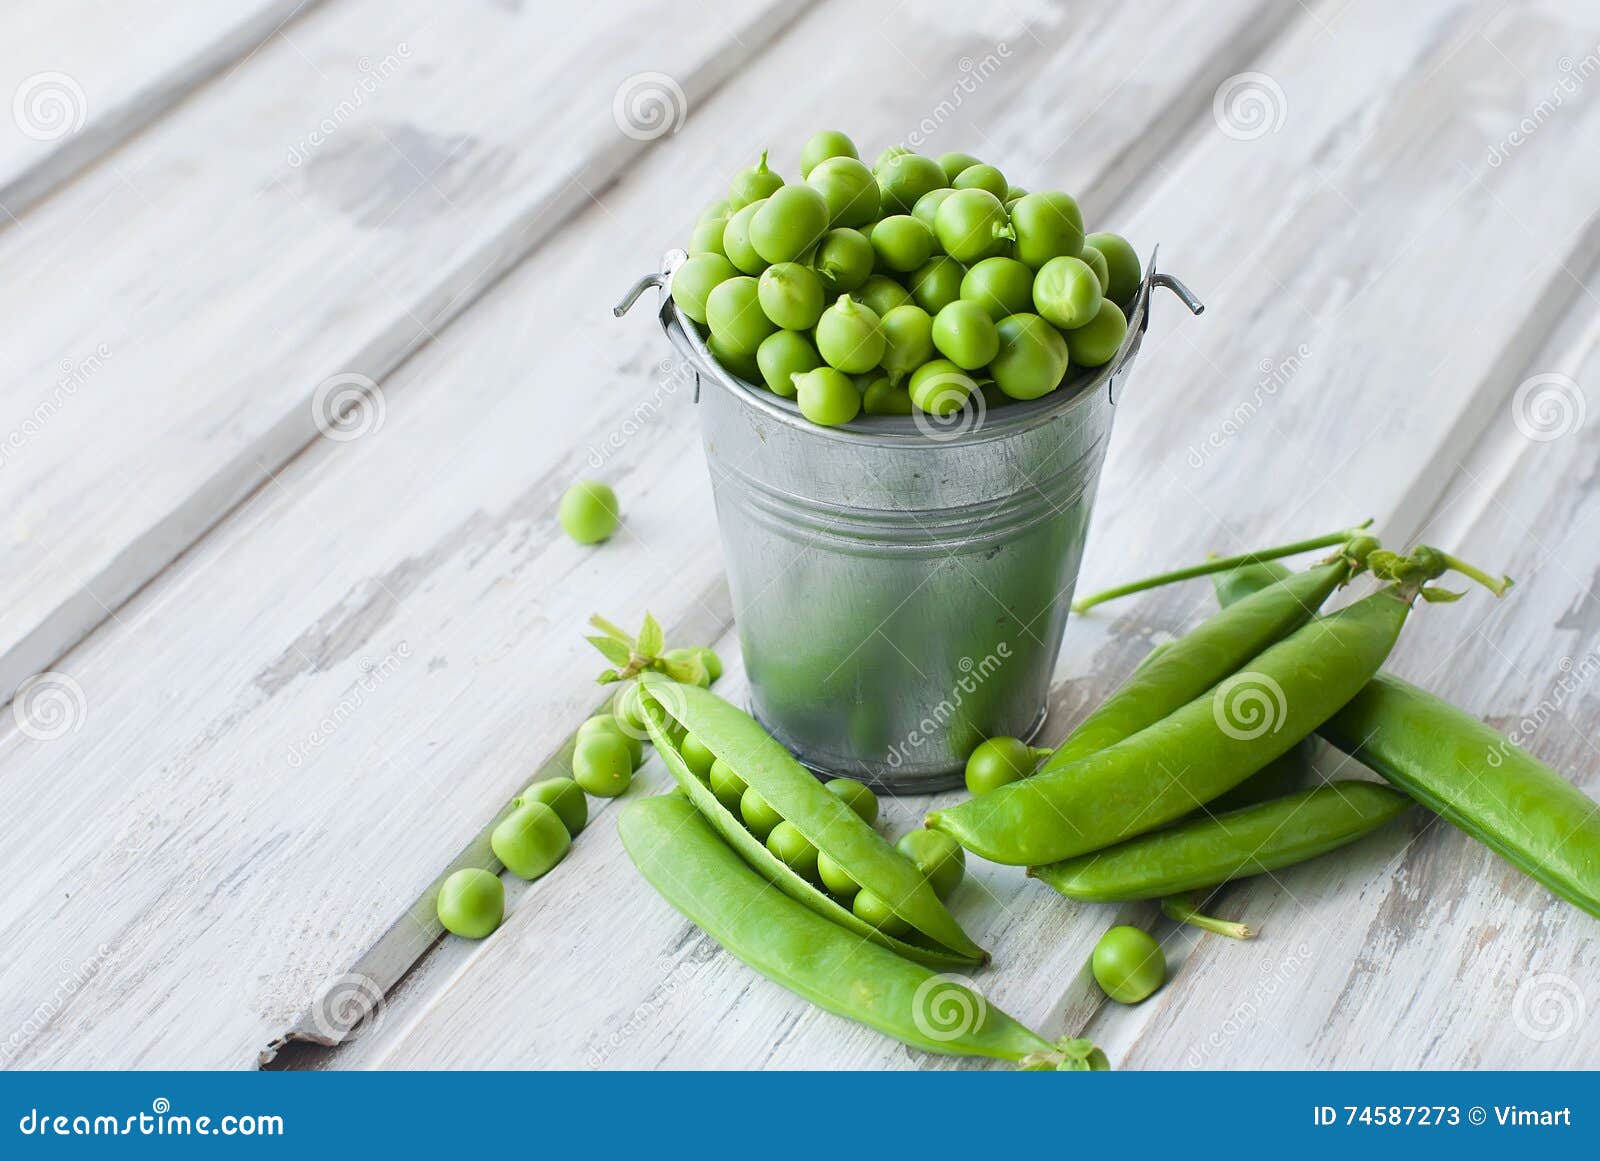 green peas in a bucket